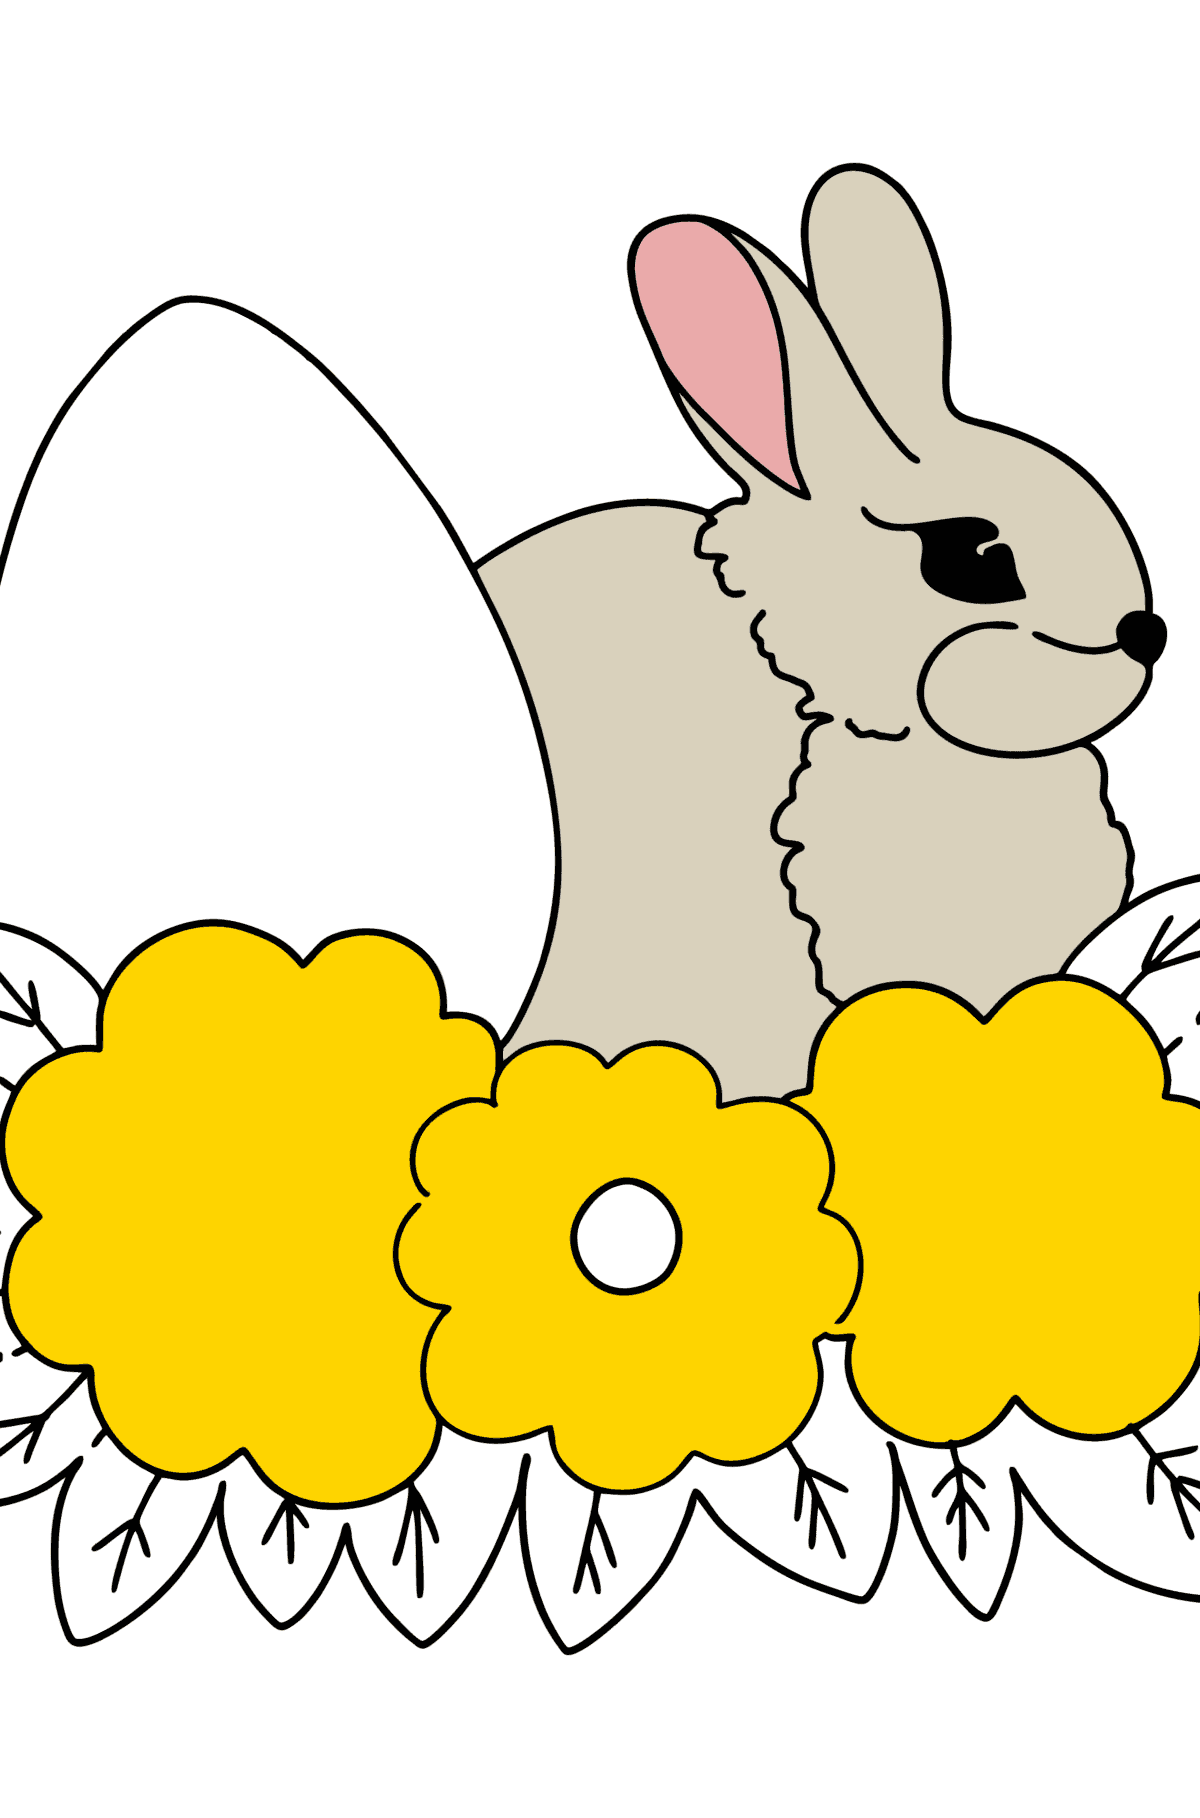 Coelhinho e Desenho para colorir de Páscoa - Imagens para Colorir para Crianças